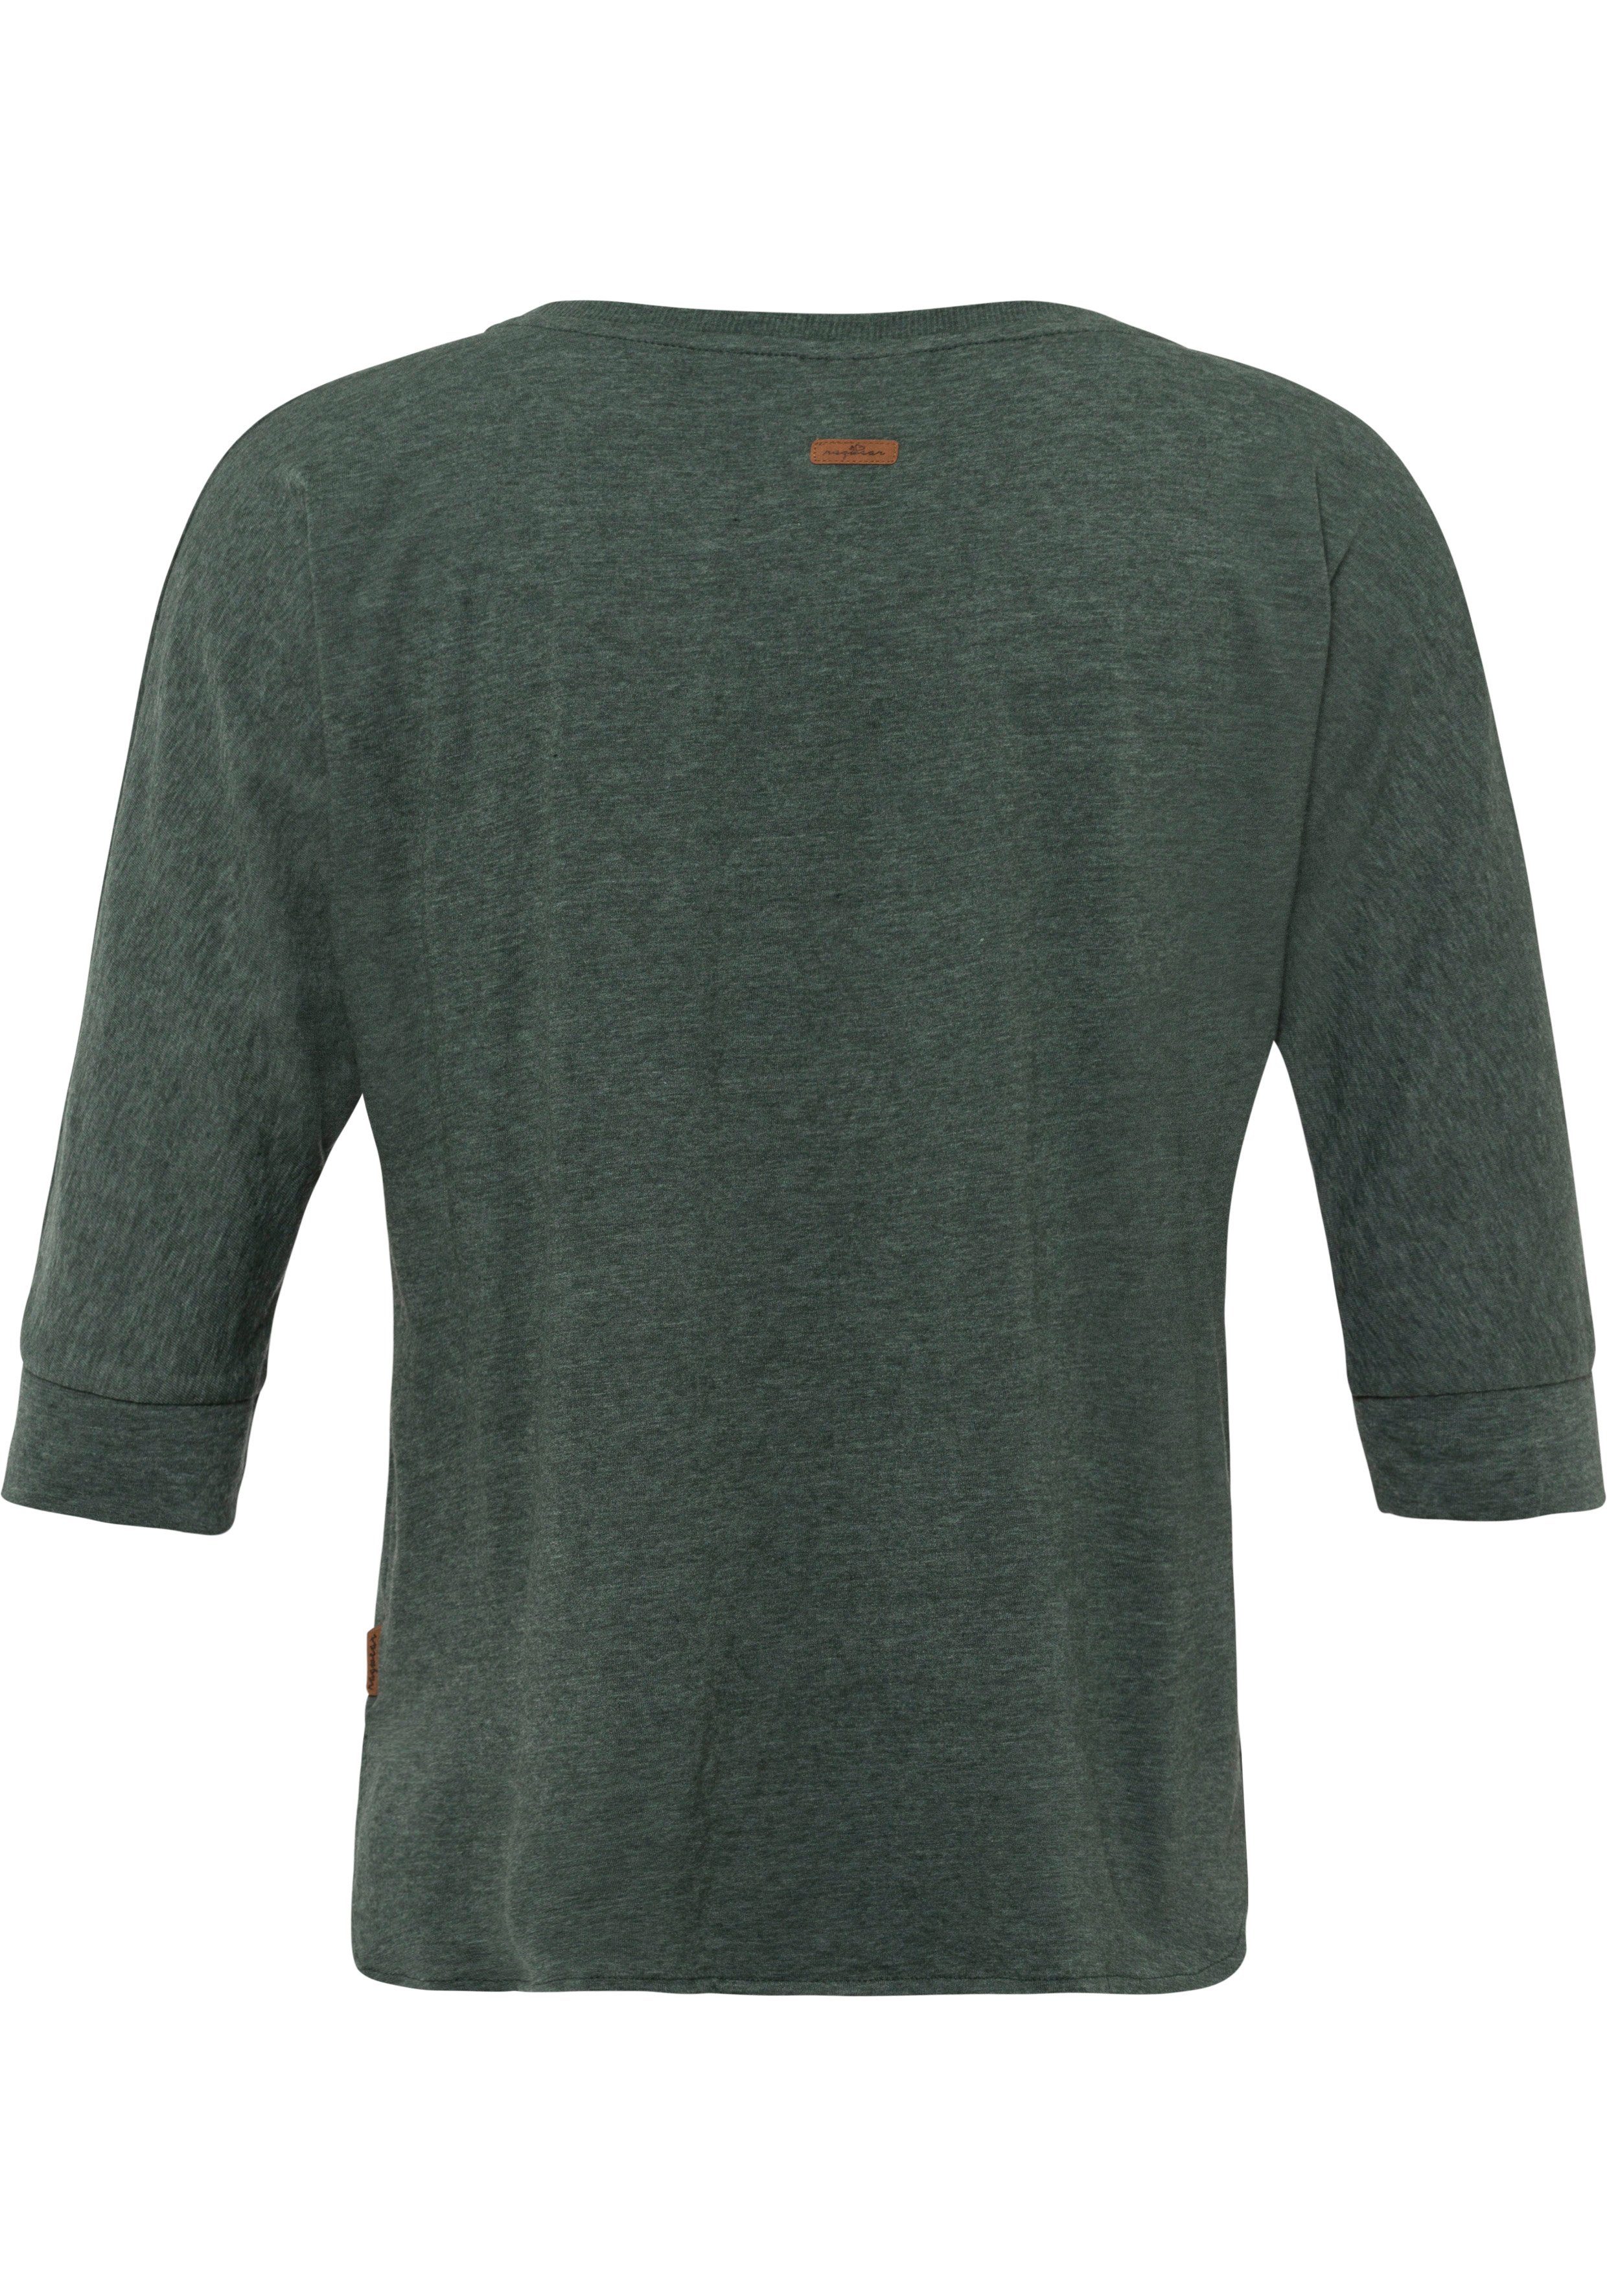 in T-Shirt Holzoptik Zierknopfbesatz dark mit Ragwear im Herz-Design SHIMONA green natürlicher